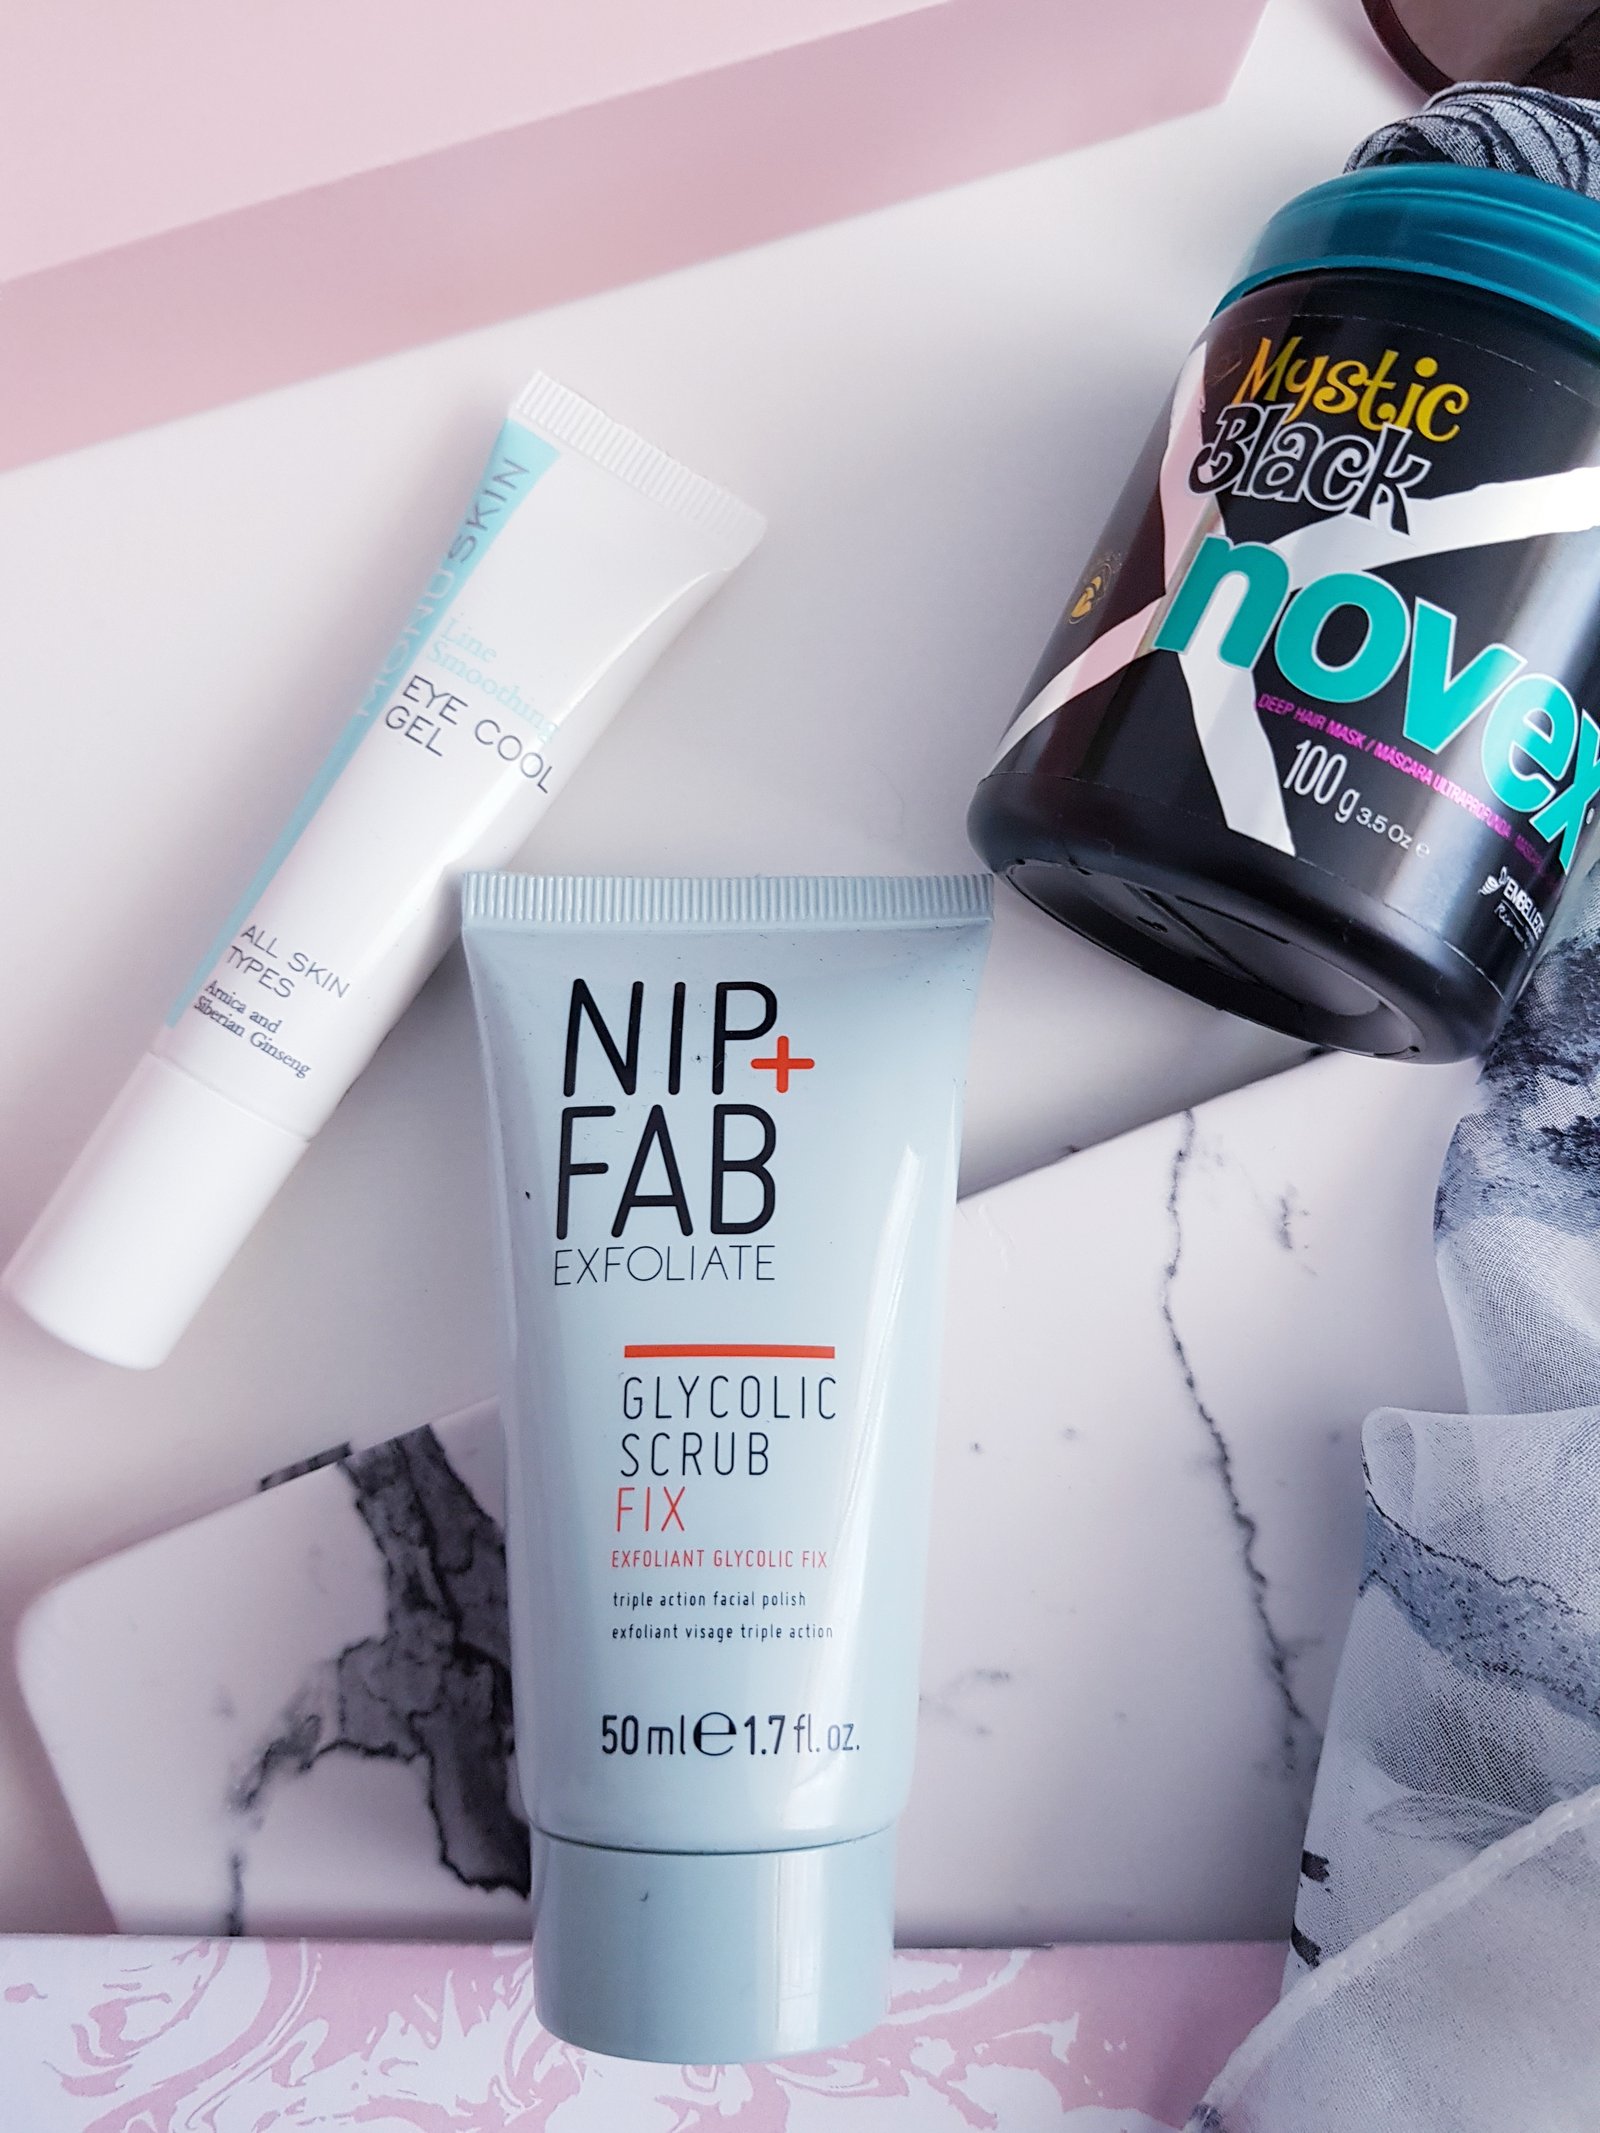 Glossybox French Beauty Essentials - Nip & Fab Glycolic Scrub, Monu SKincare eye gel